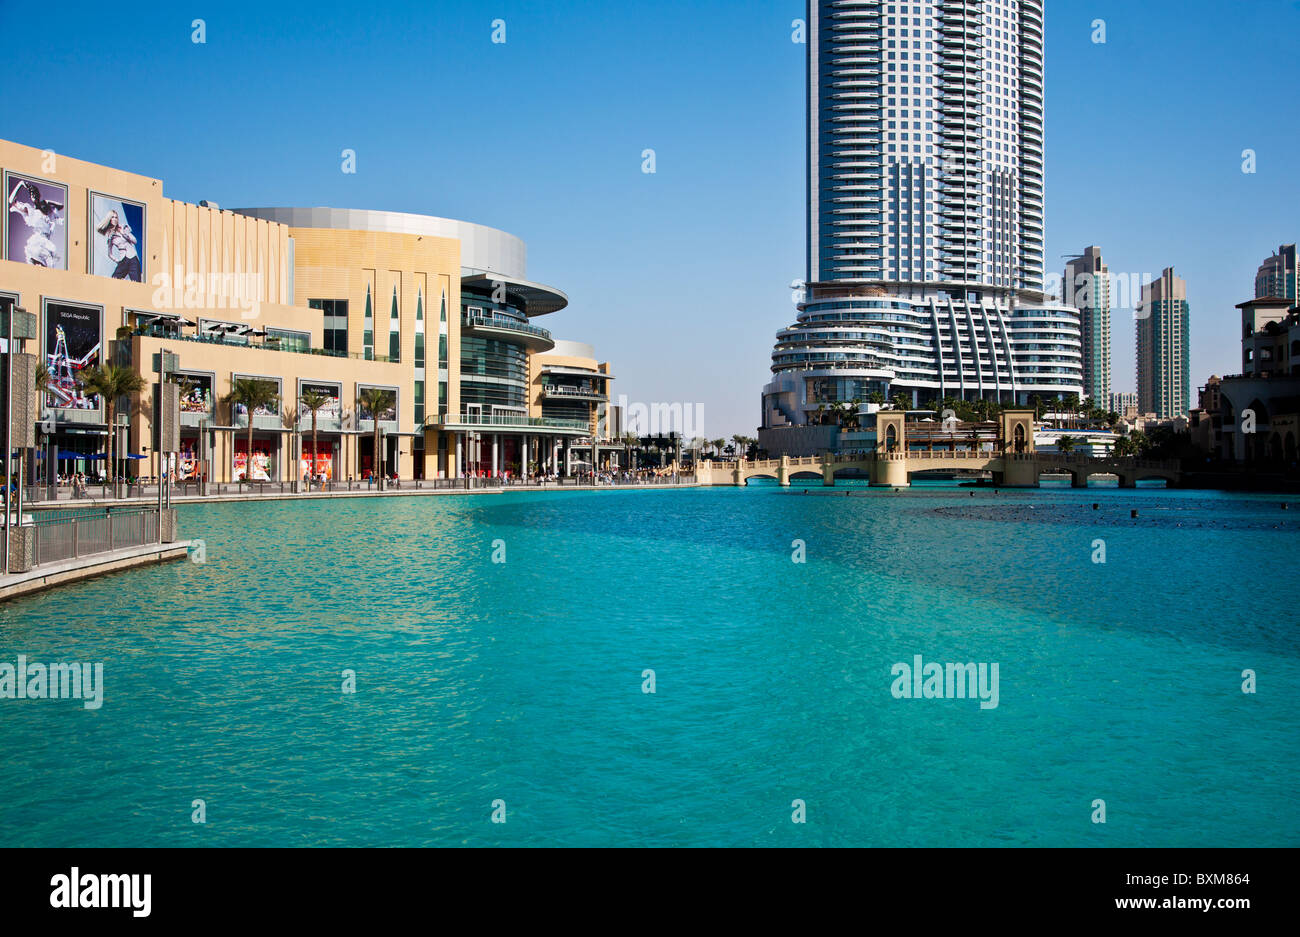 El centro comercial Dubai Mall y la dirección de un hotel de lujo de 5  estrellas situado en el centro de Dubai, Emiratos Árabes Unidos, EAU  Fotografía de stock - Alamy